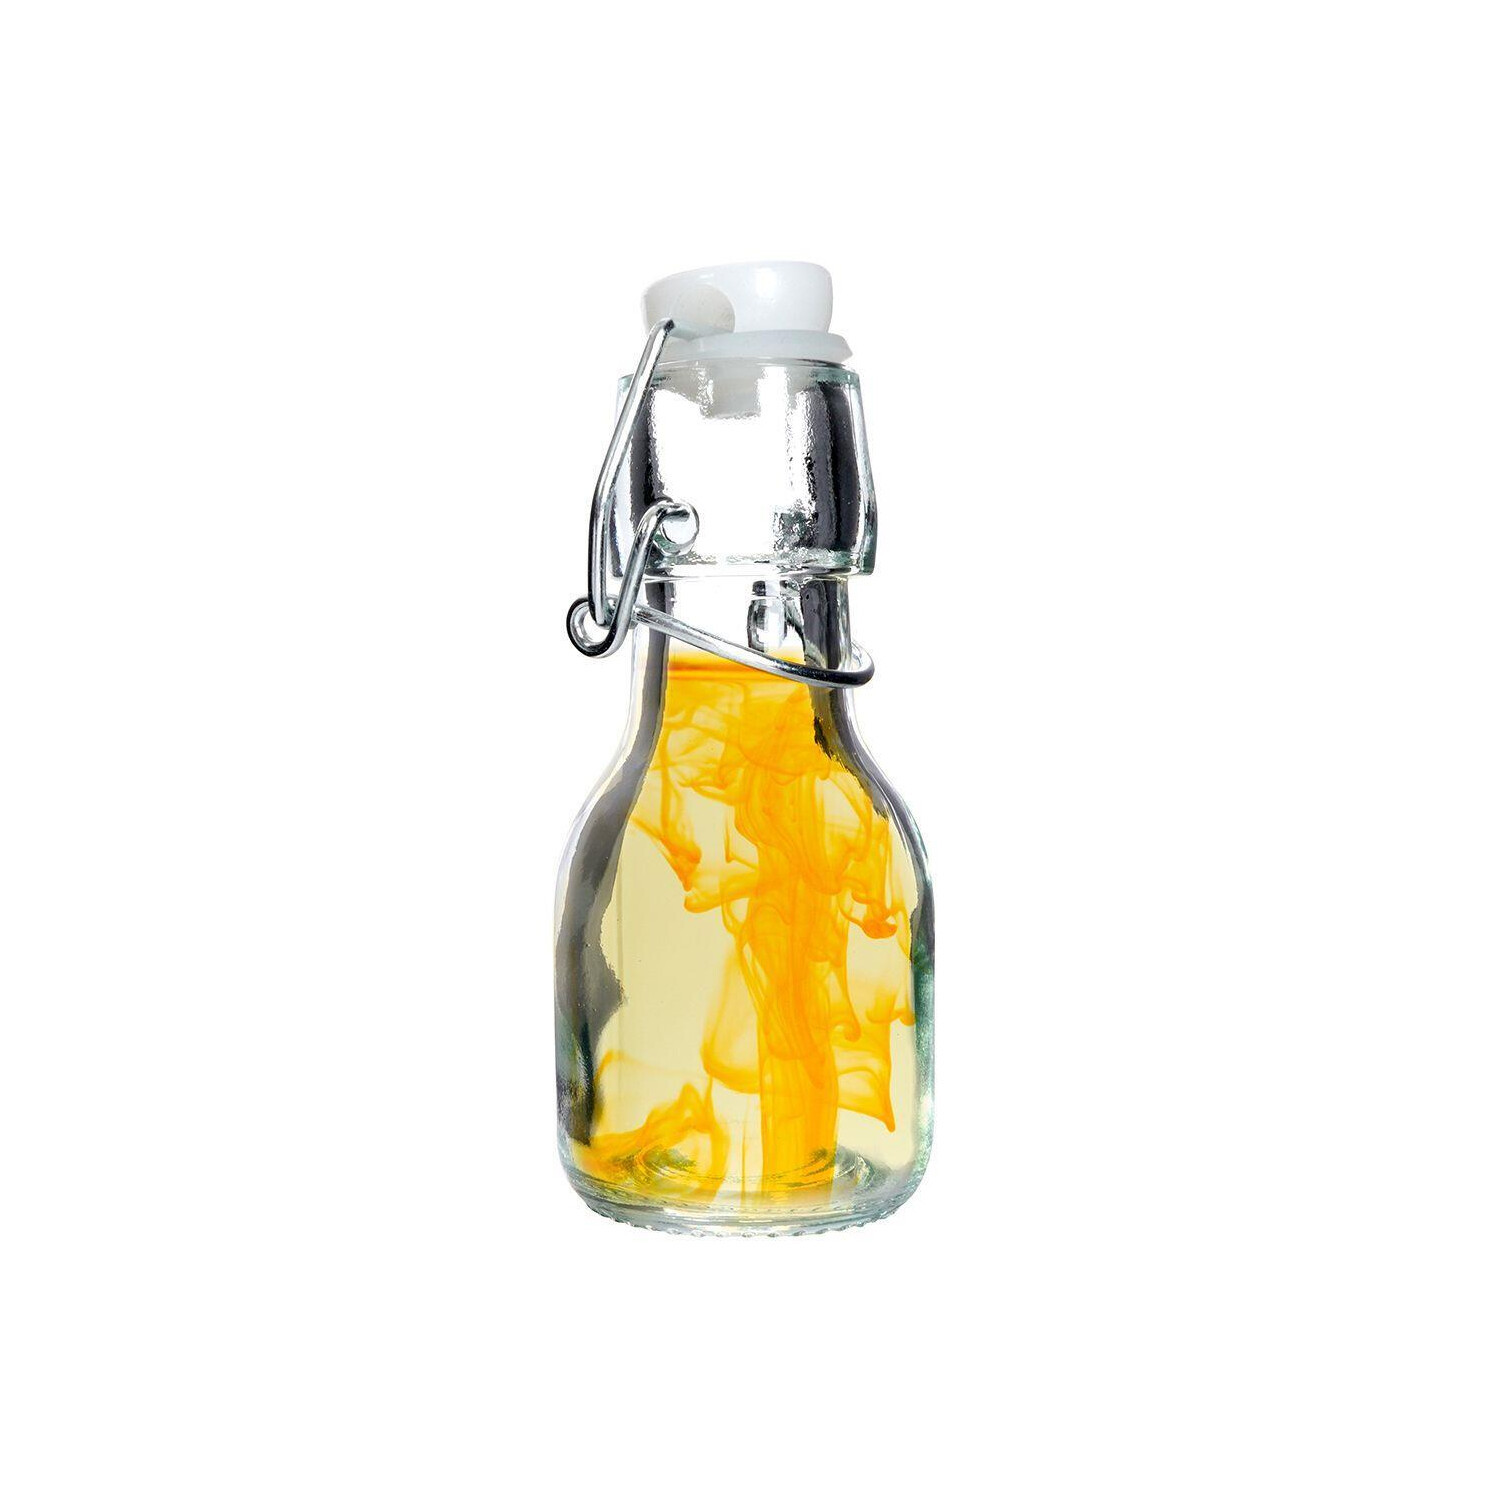 Acheter Bouteille d'huile transparente multifonction, distributeur